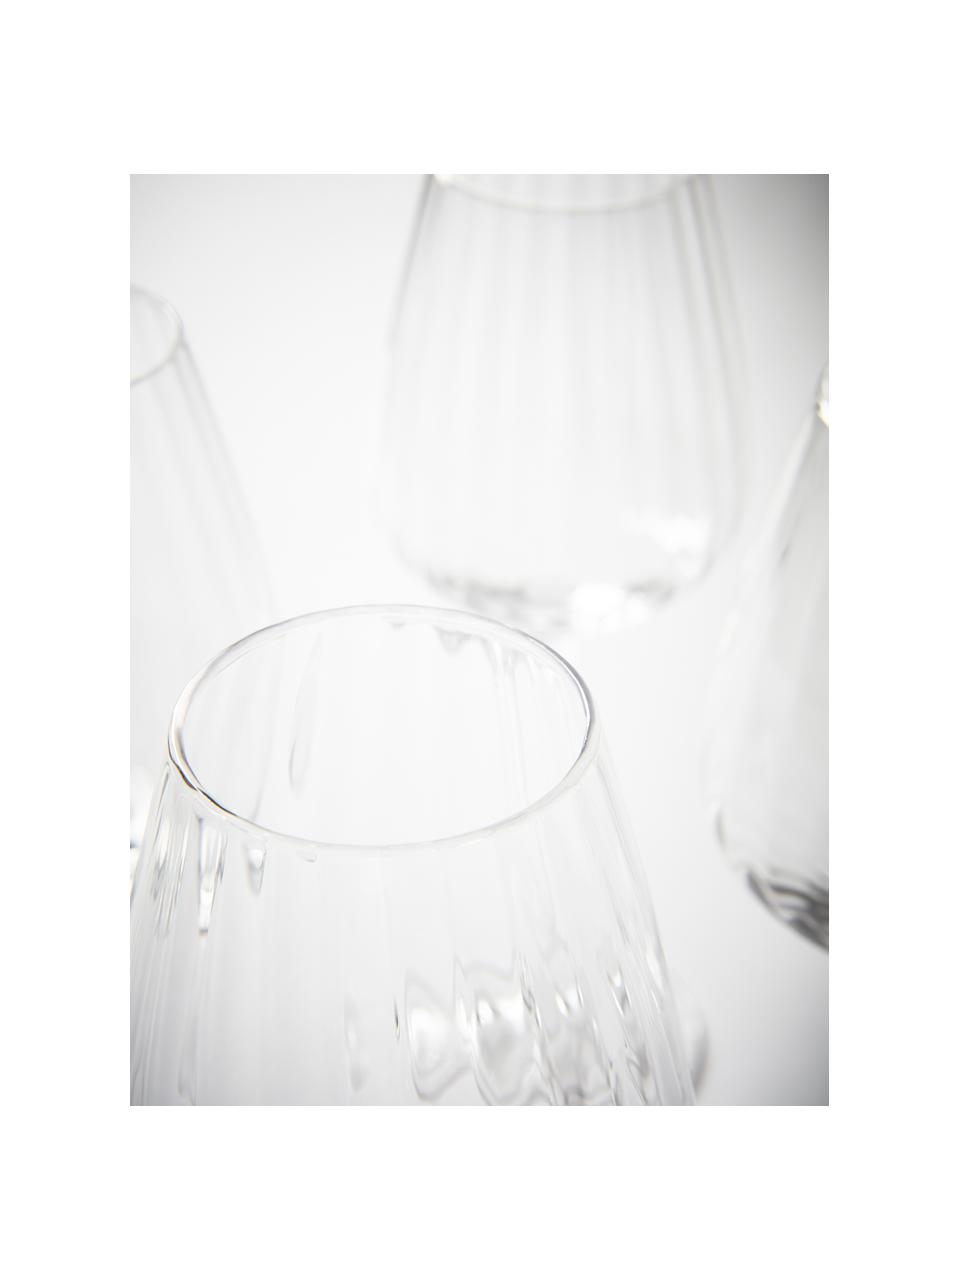 Witte wijnglazen Akia met groefstructuur, 4 stuks, Glas, Transparant, Ø 8 x H 24 cm